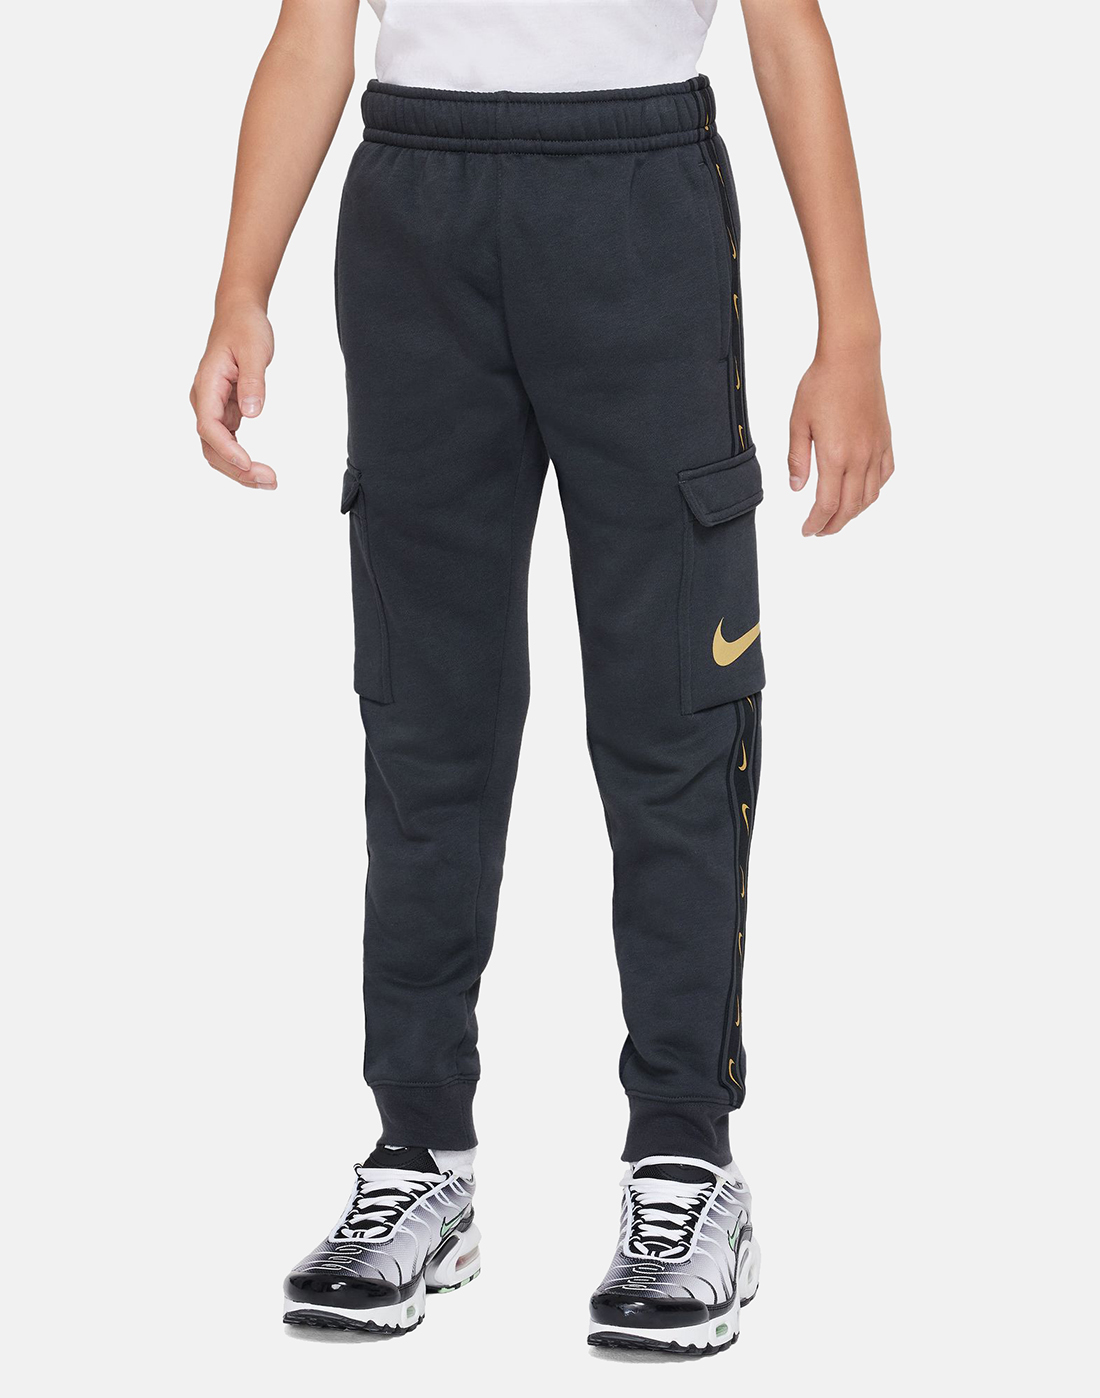 Nike Older Boys Repeat Cargo Pant - Grey | Life Style Sports UK